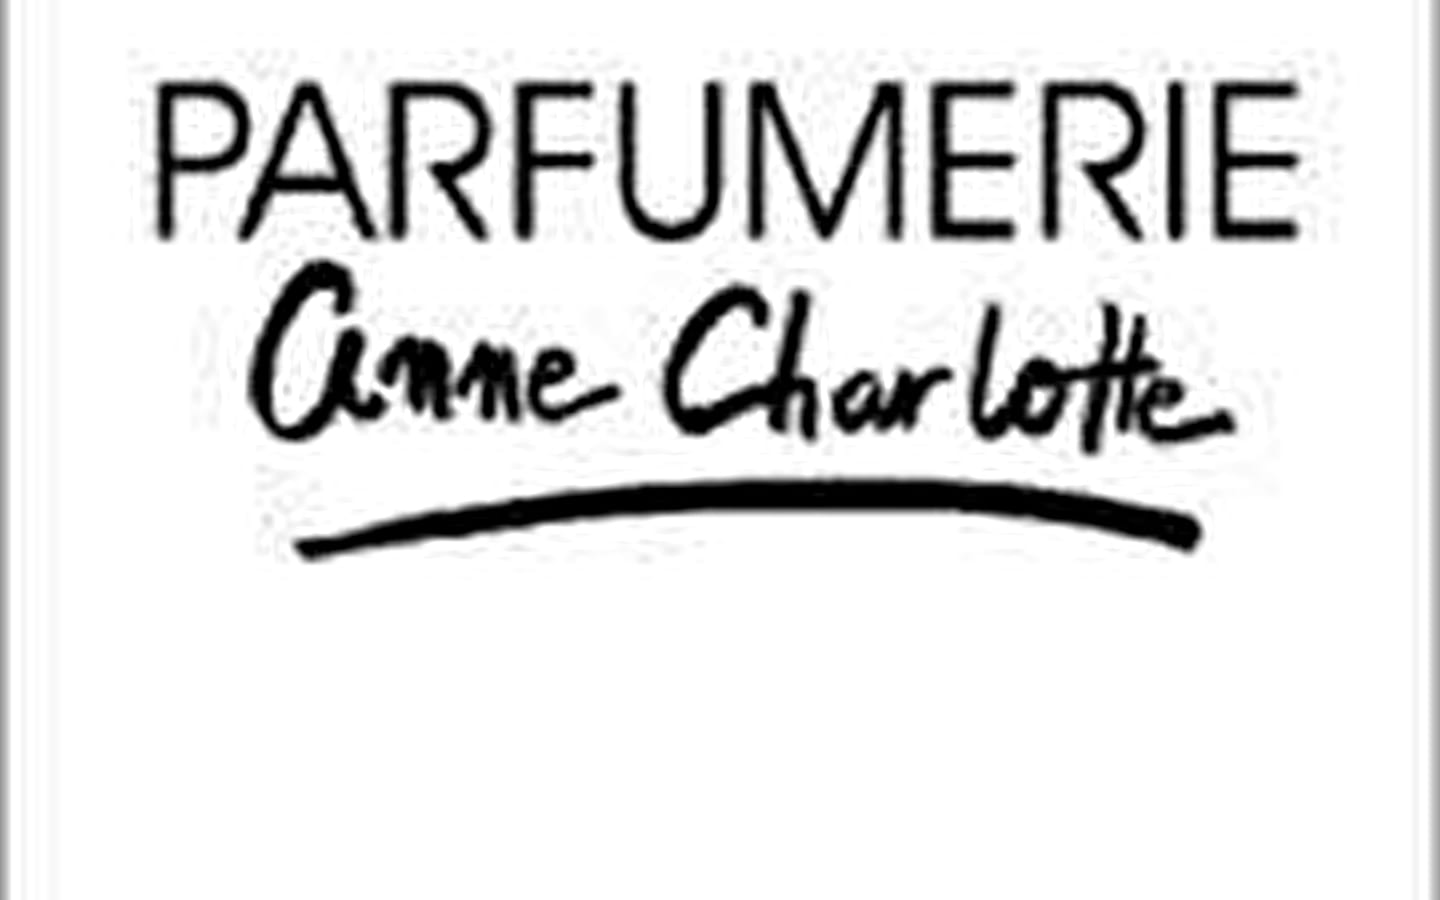 Parfumerie Anne Charlotte